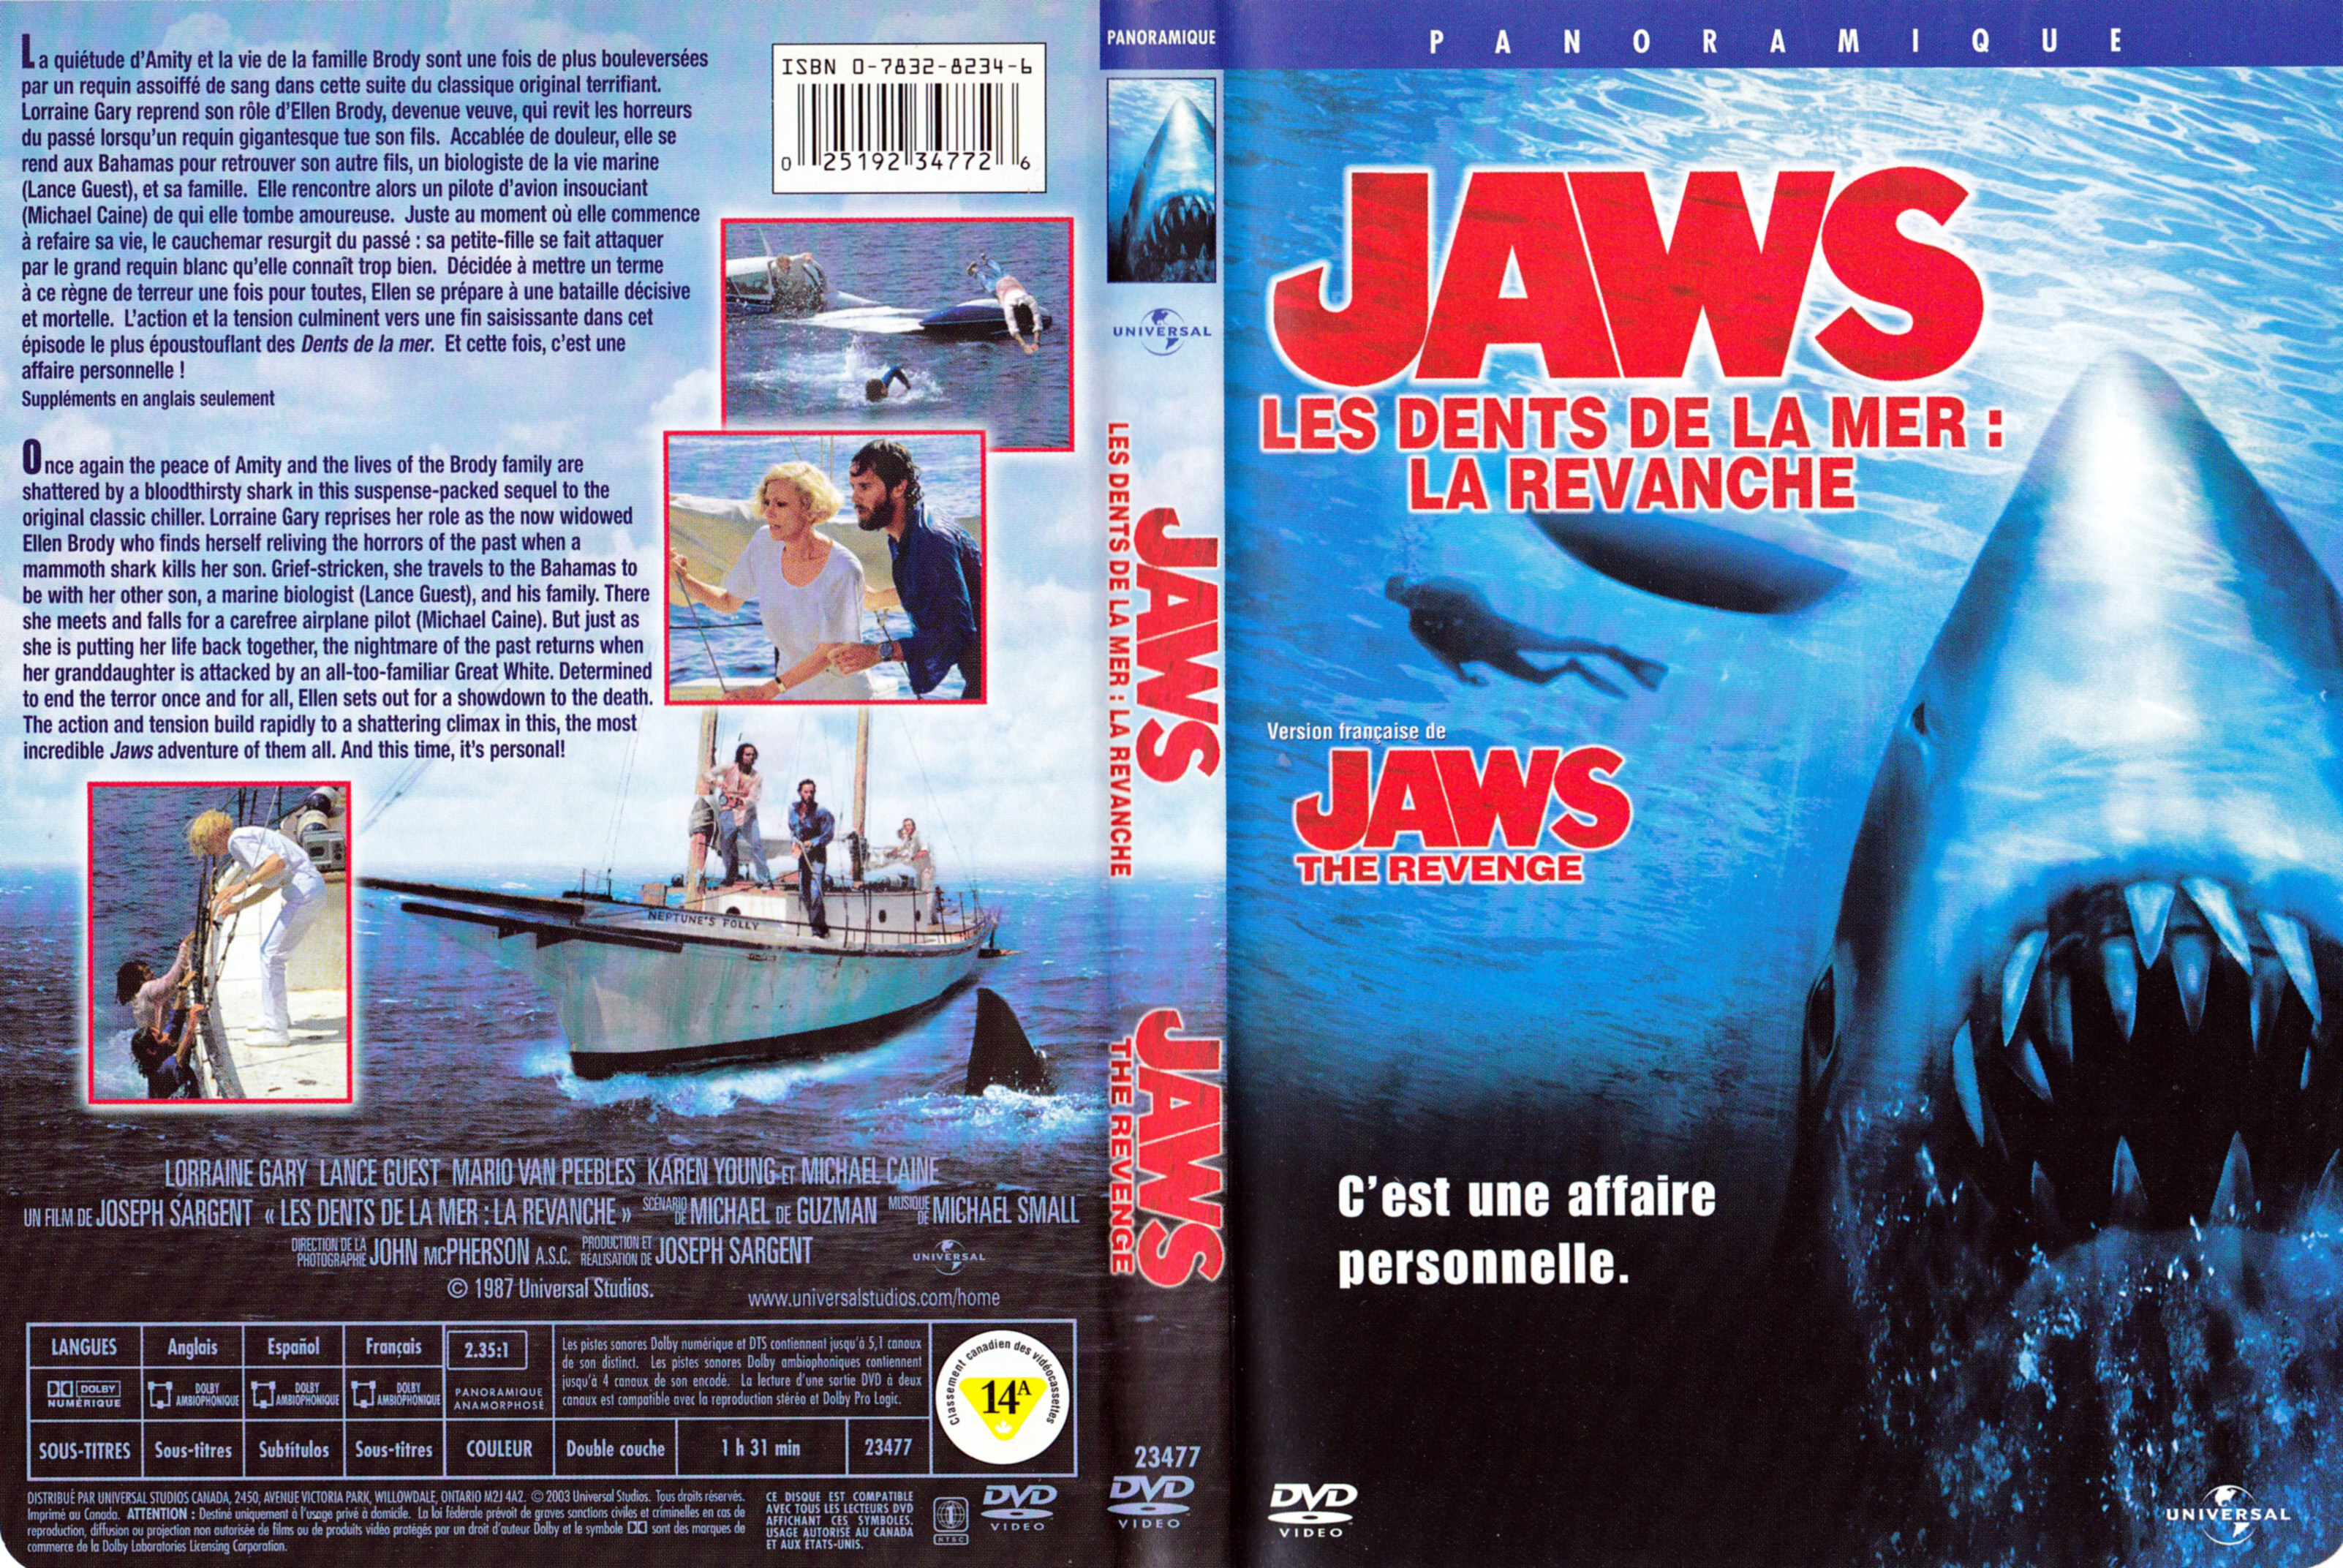 Jaquette DVD Les dents de la mer 4 La revanche - Jaws the revenge (Canadienne)